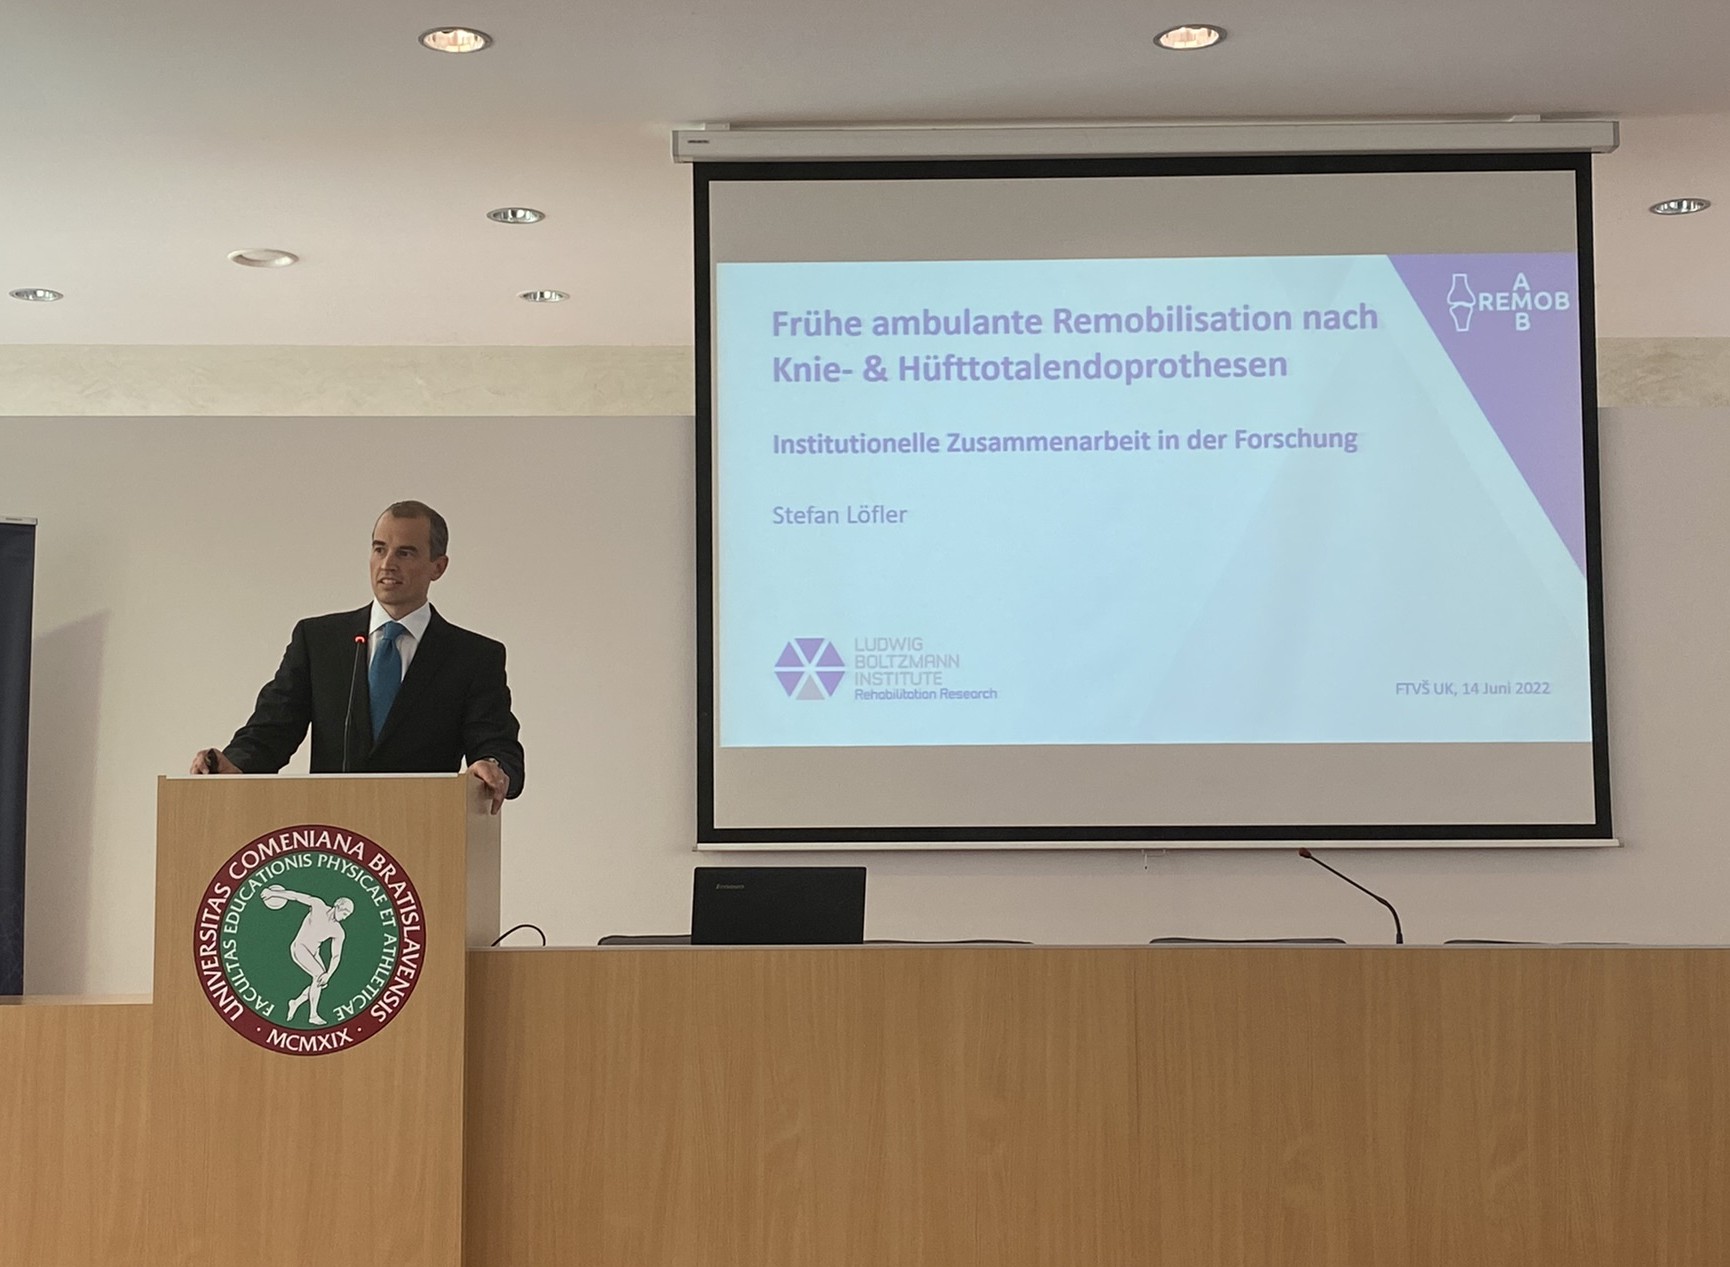 AMB-REMOB Präsentation auf der Konferenz „Grenzüberschreitende Zusammenarbeit und Vernetzung von Regionen“ (Bratislava, Slowakei)